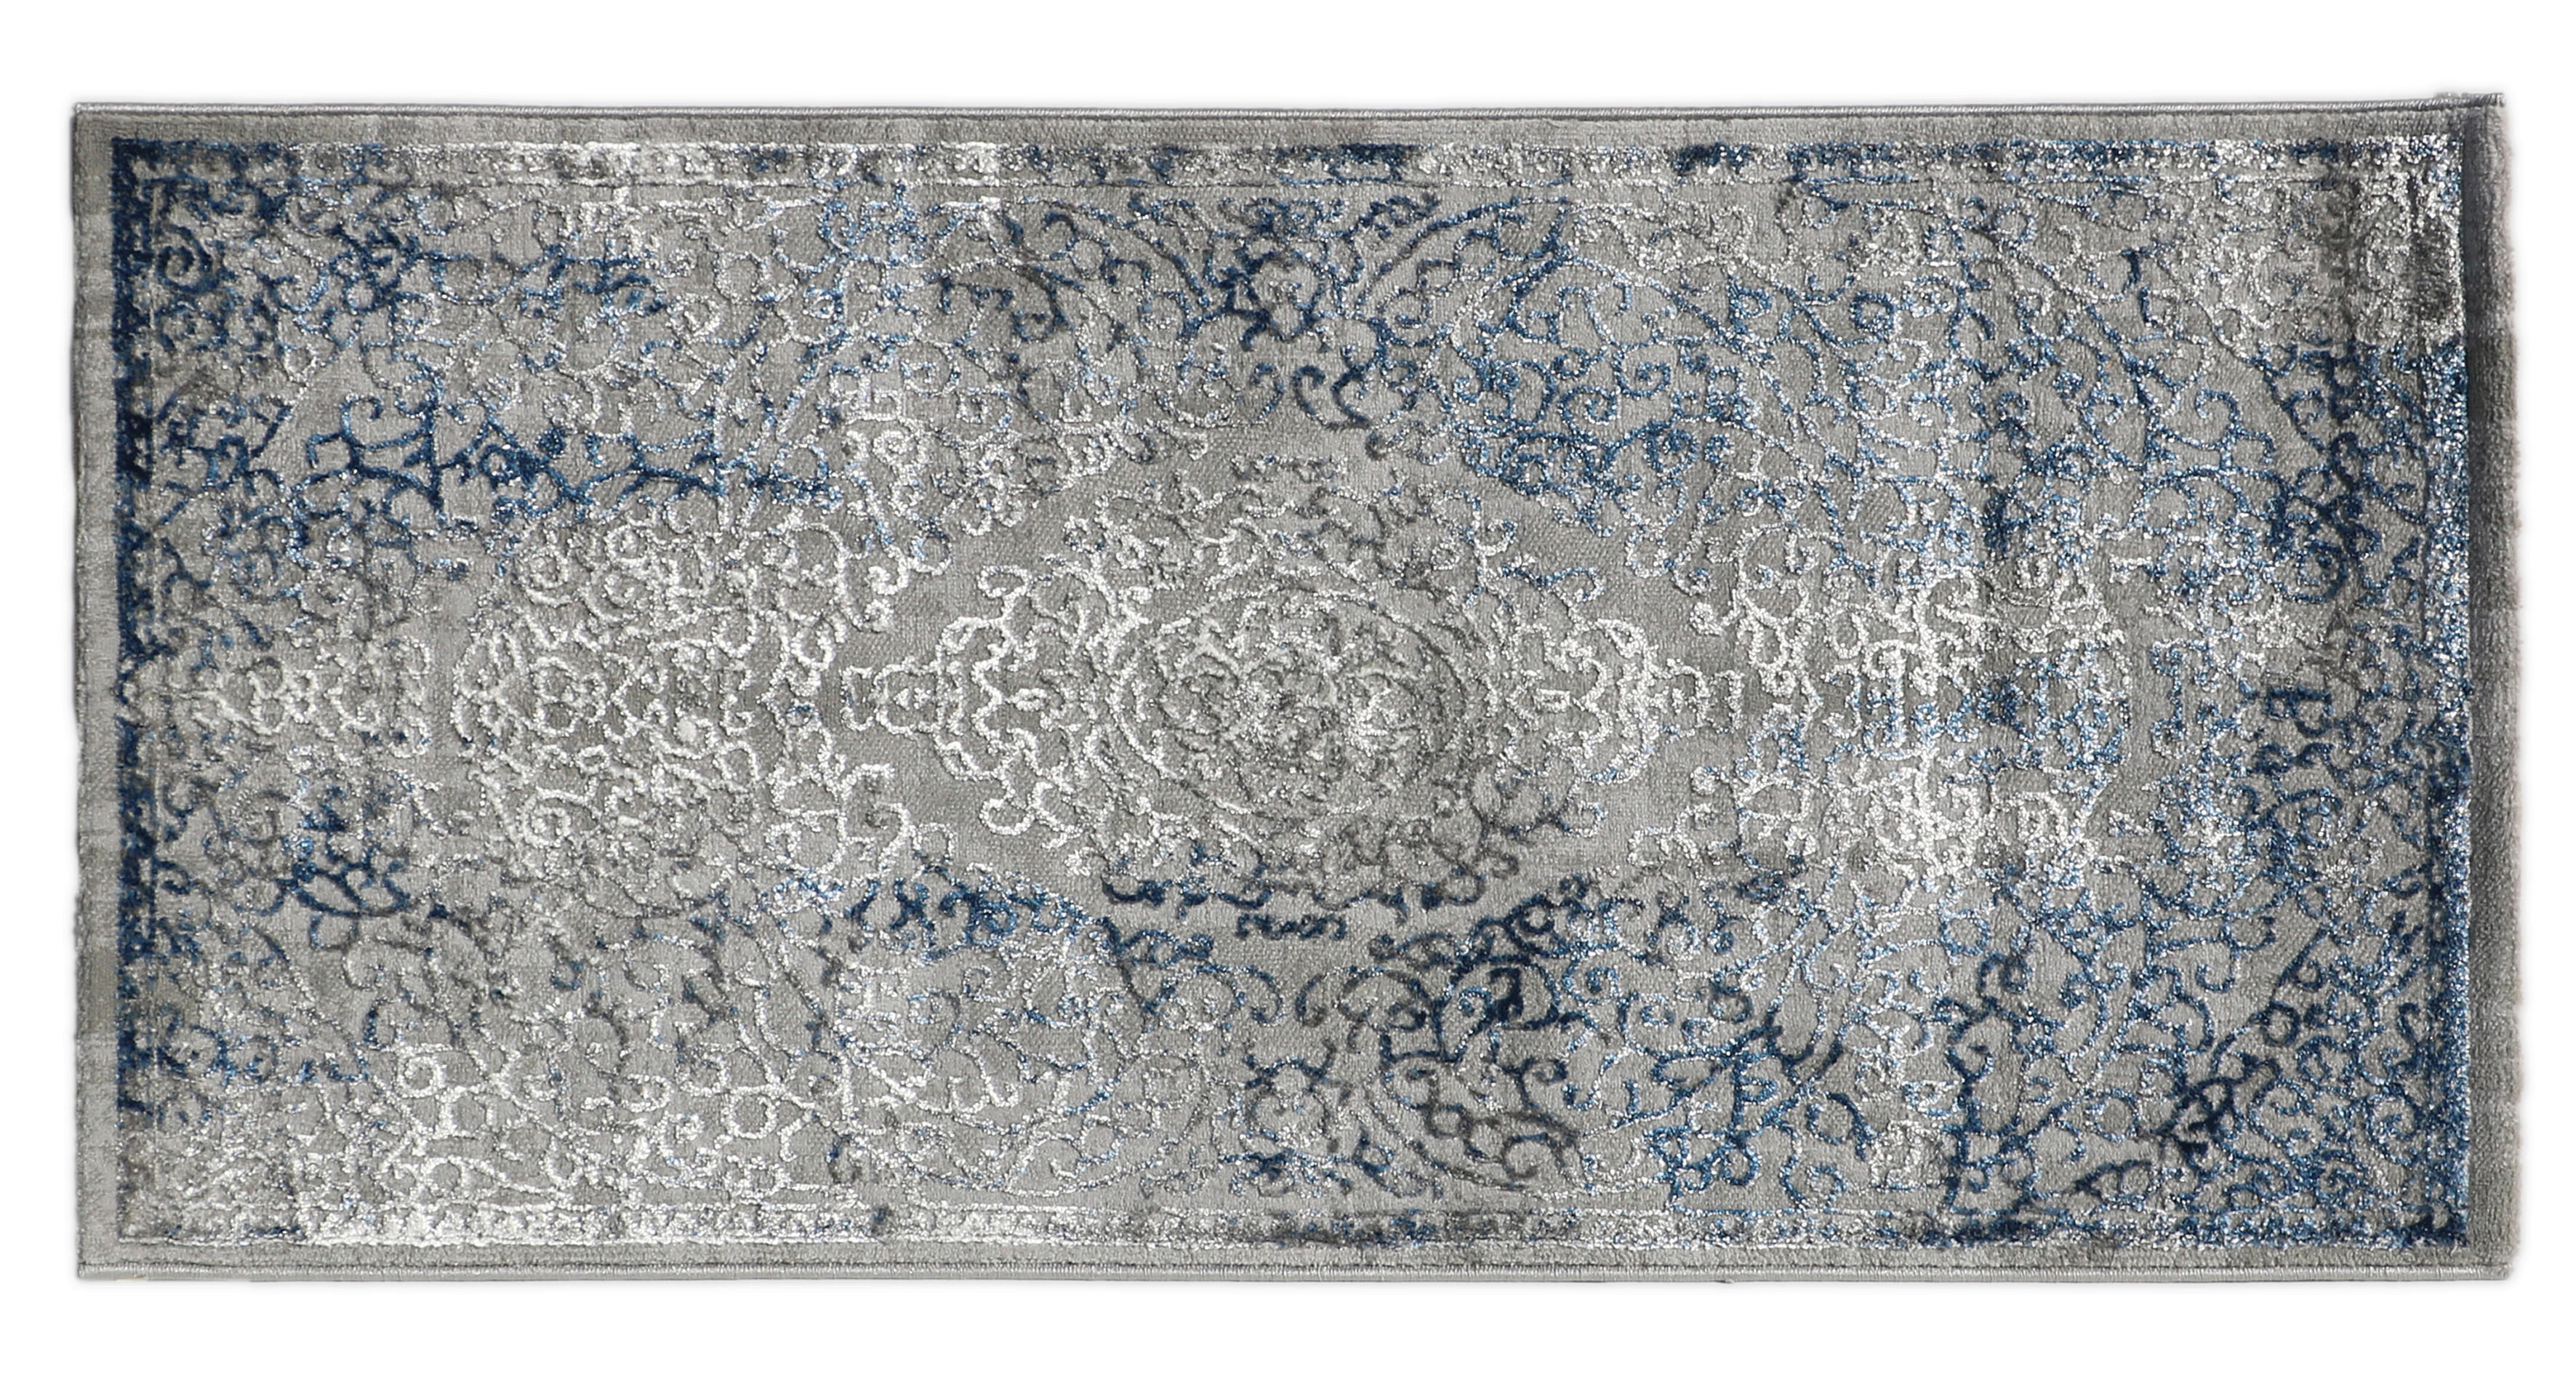 KOBEREC TKANÝ NA PLOCHO, 70/140 cm, modrá, šedá - modrá,šedá - textil